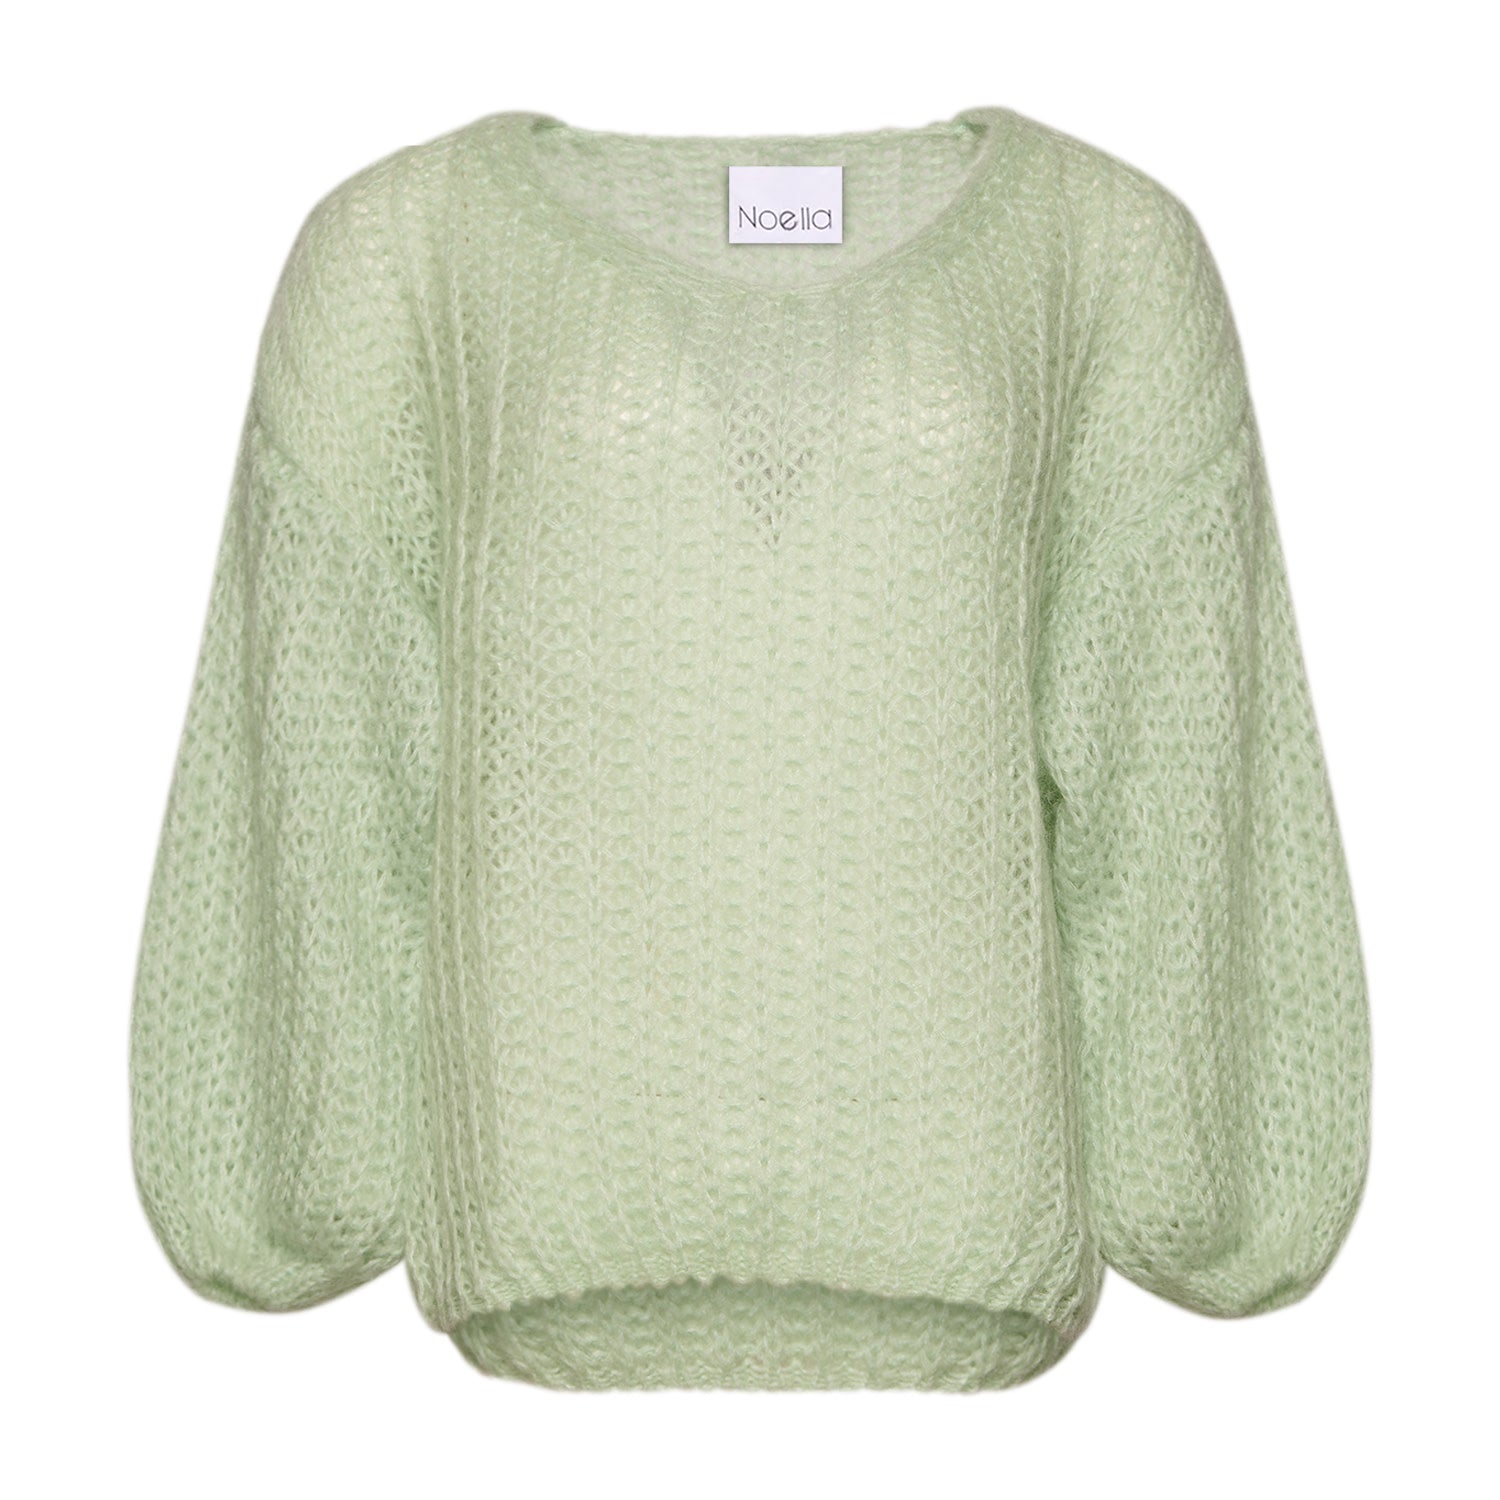 Noella - Joseph blouse solid, pistacio green by Noella | stylebykul